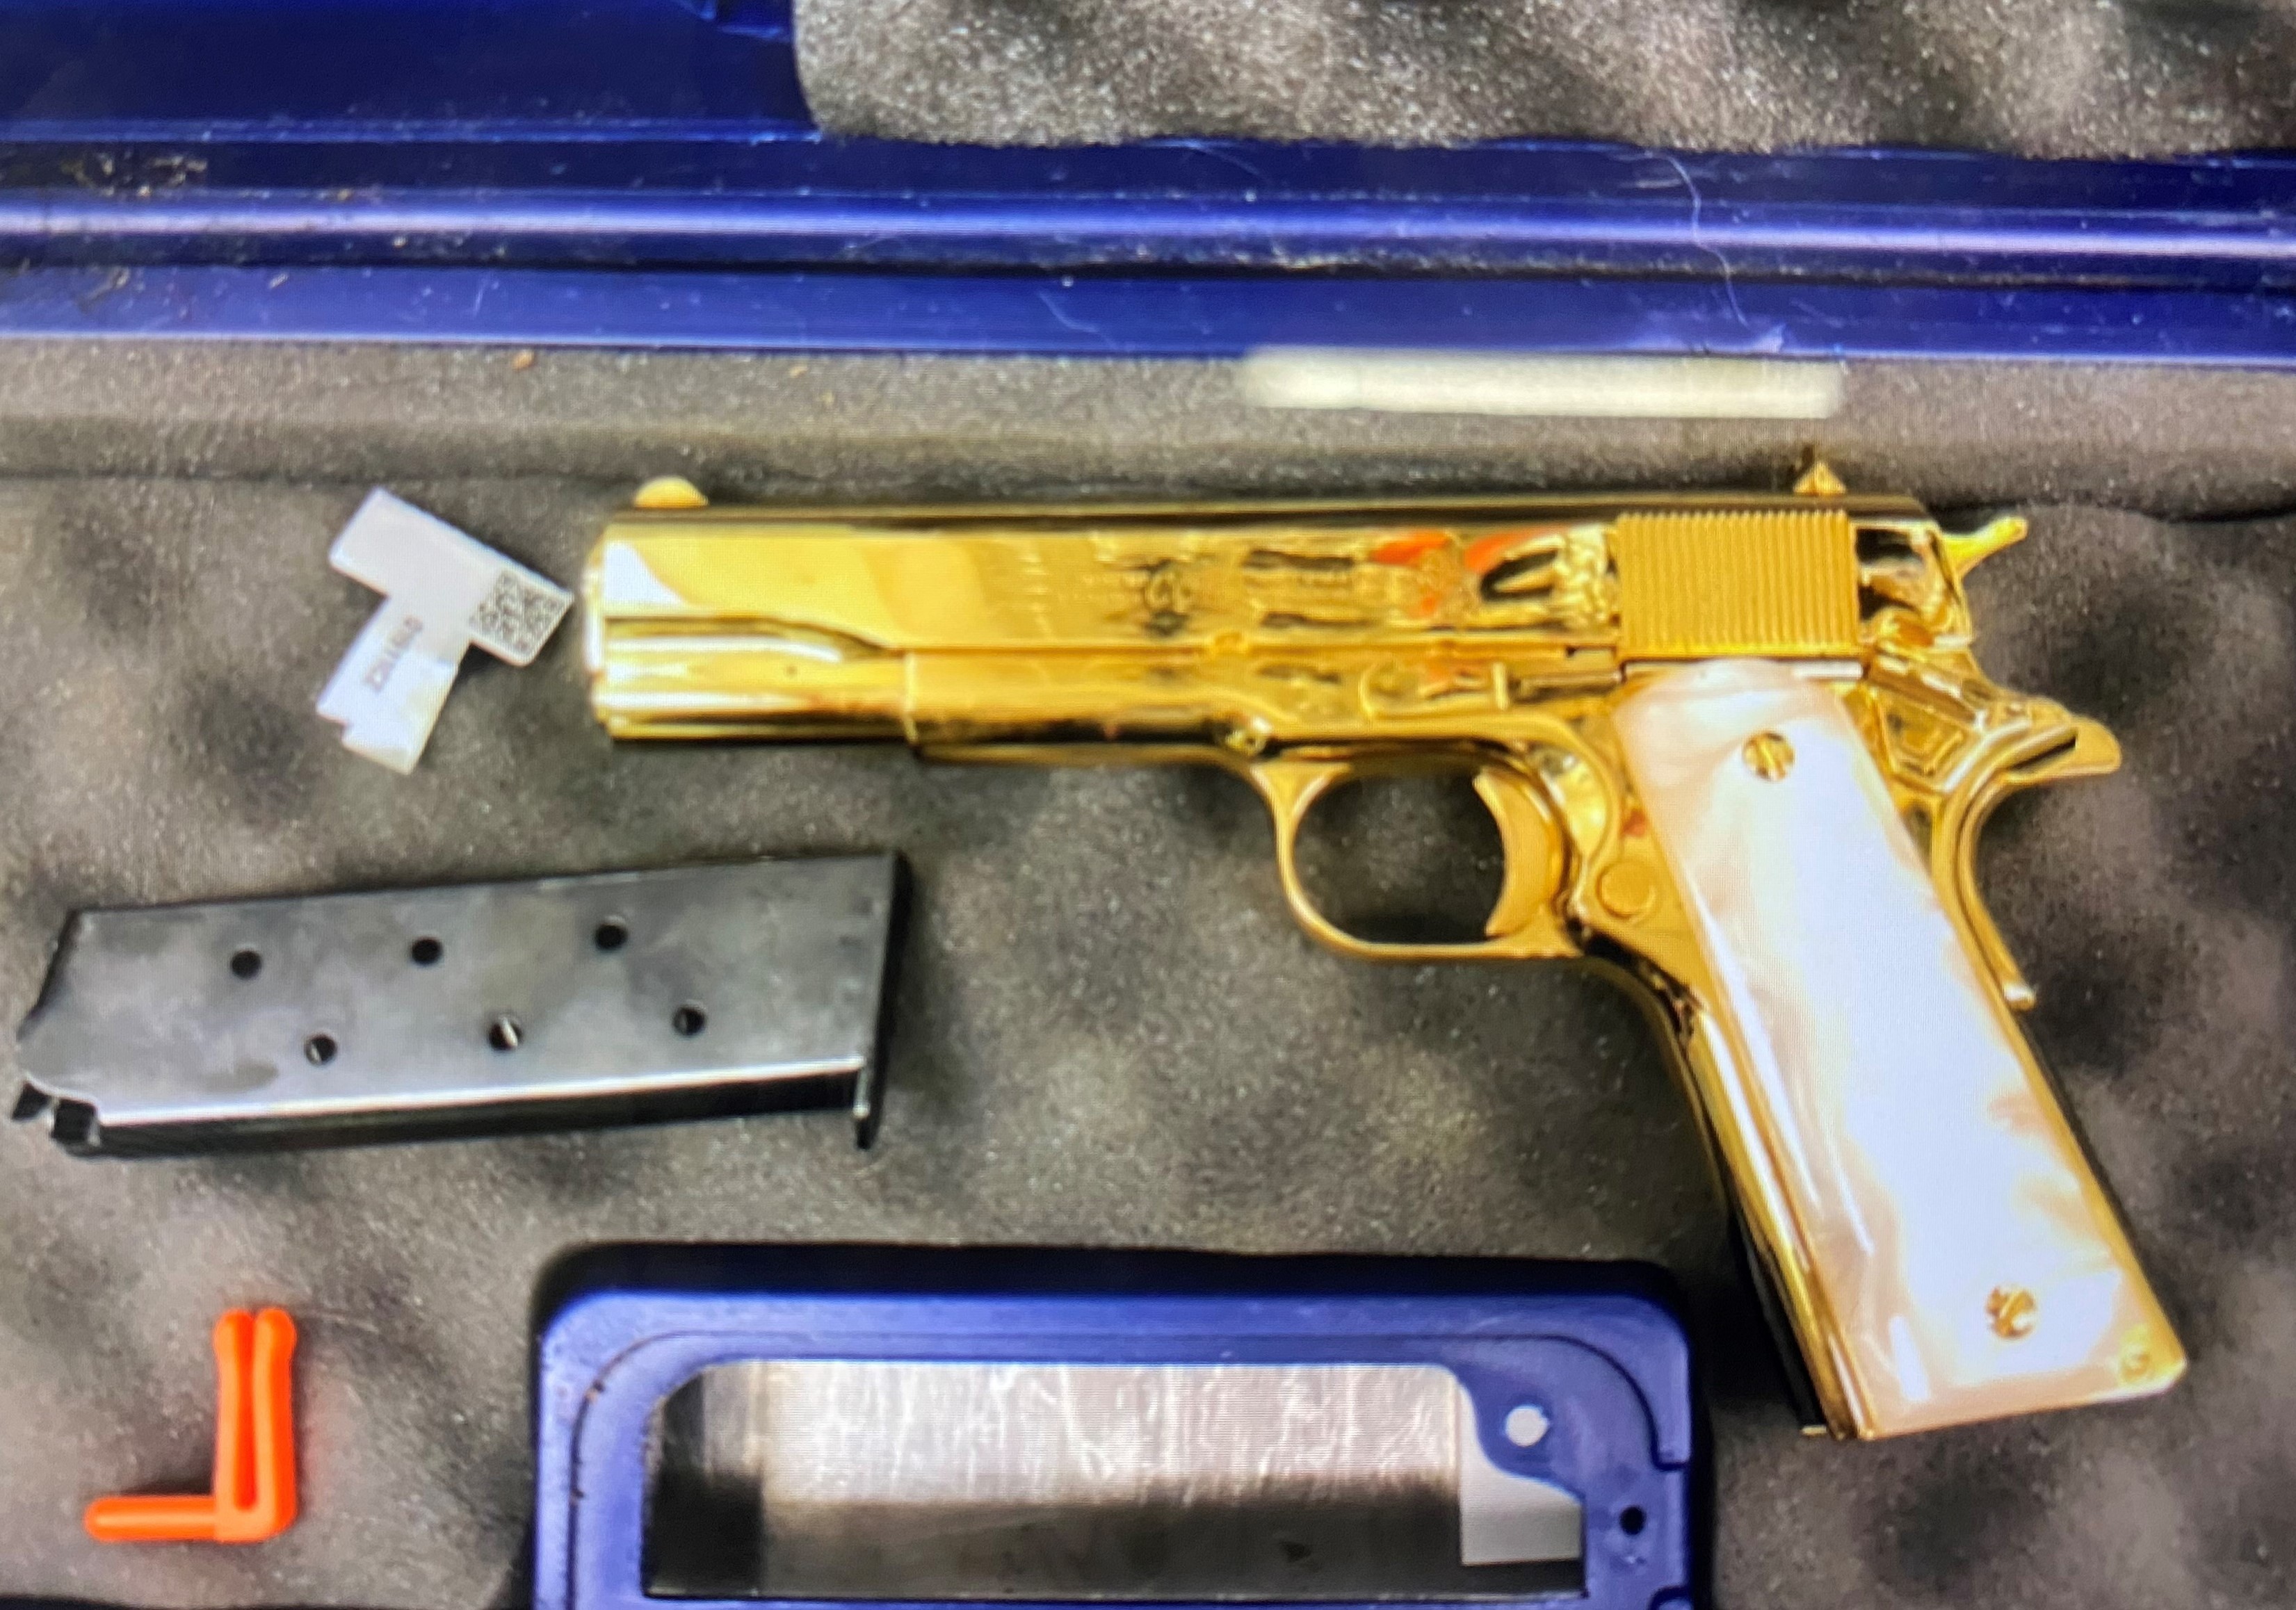 Pistola chapada en oro incautada en el aeropuerto de Sydney